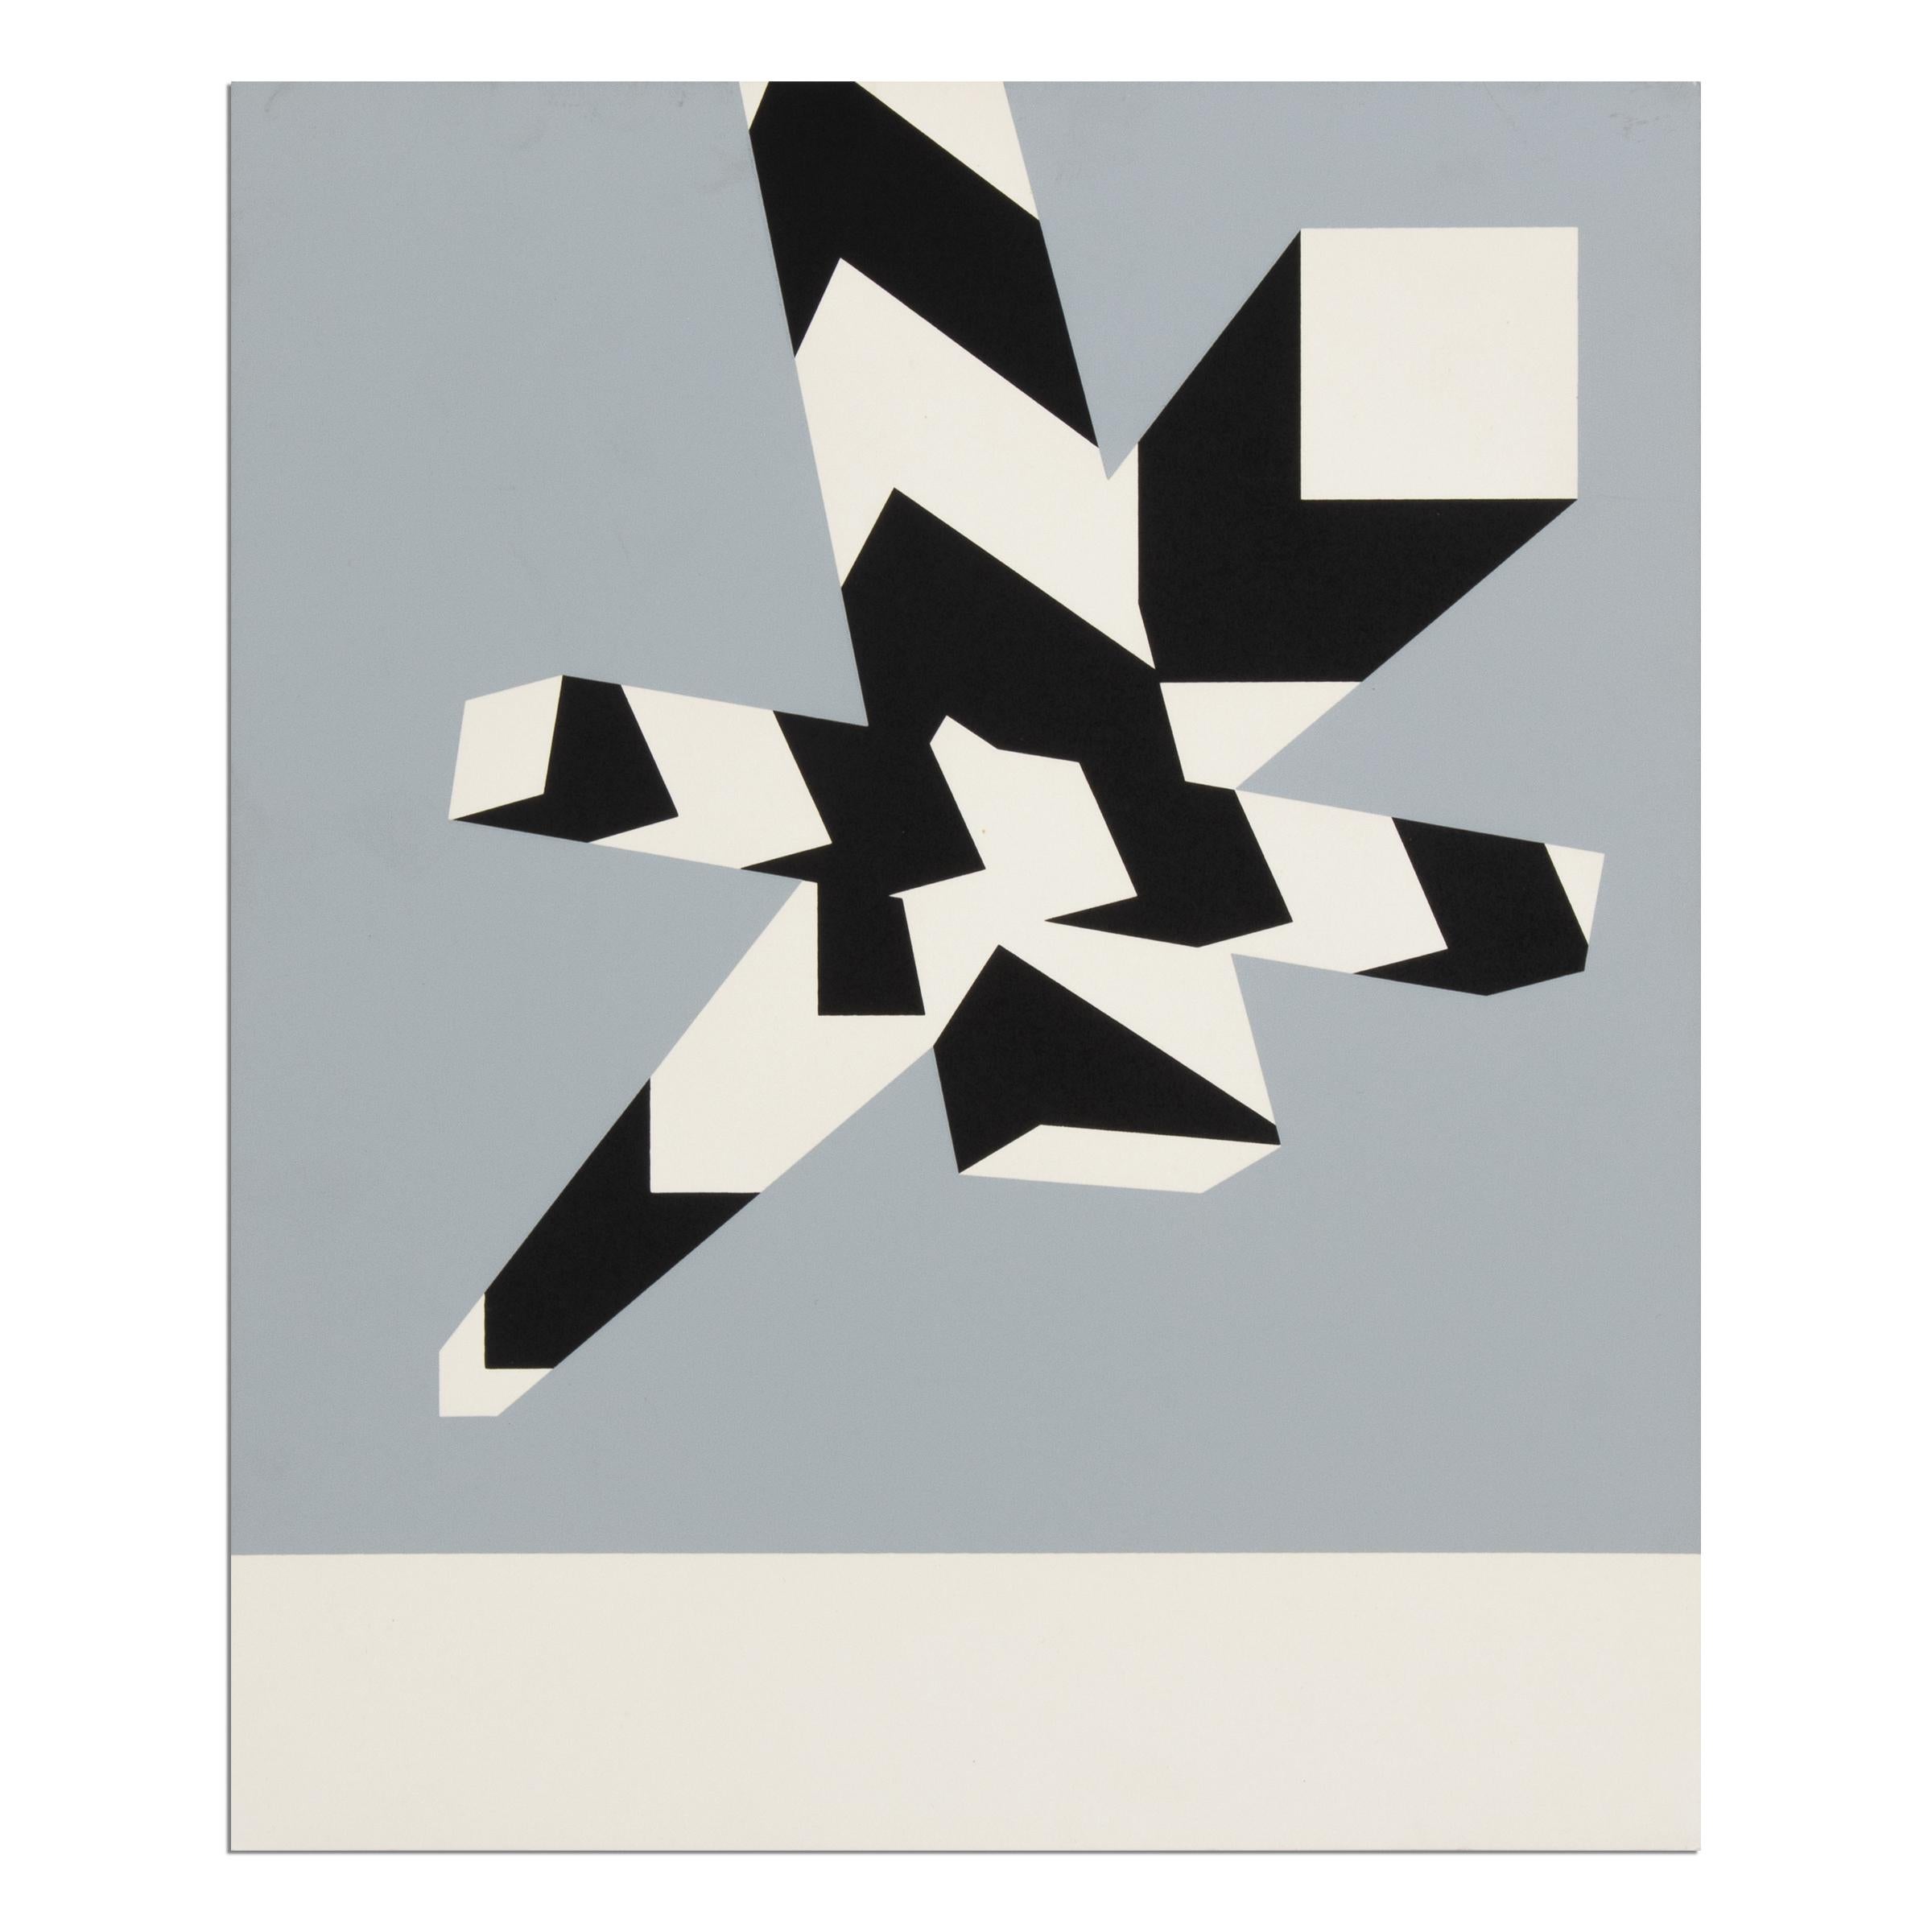 Allan D'Arcangelo, Untitled - Screenprint from 1969, Abstract Art, Pop Art